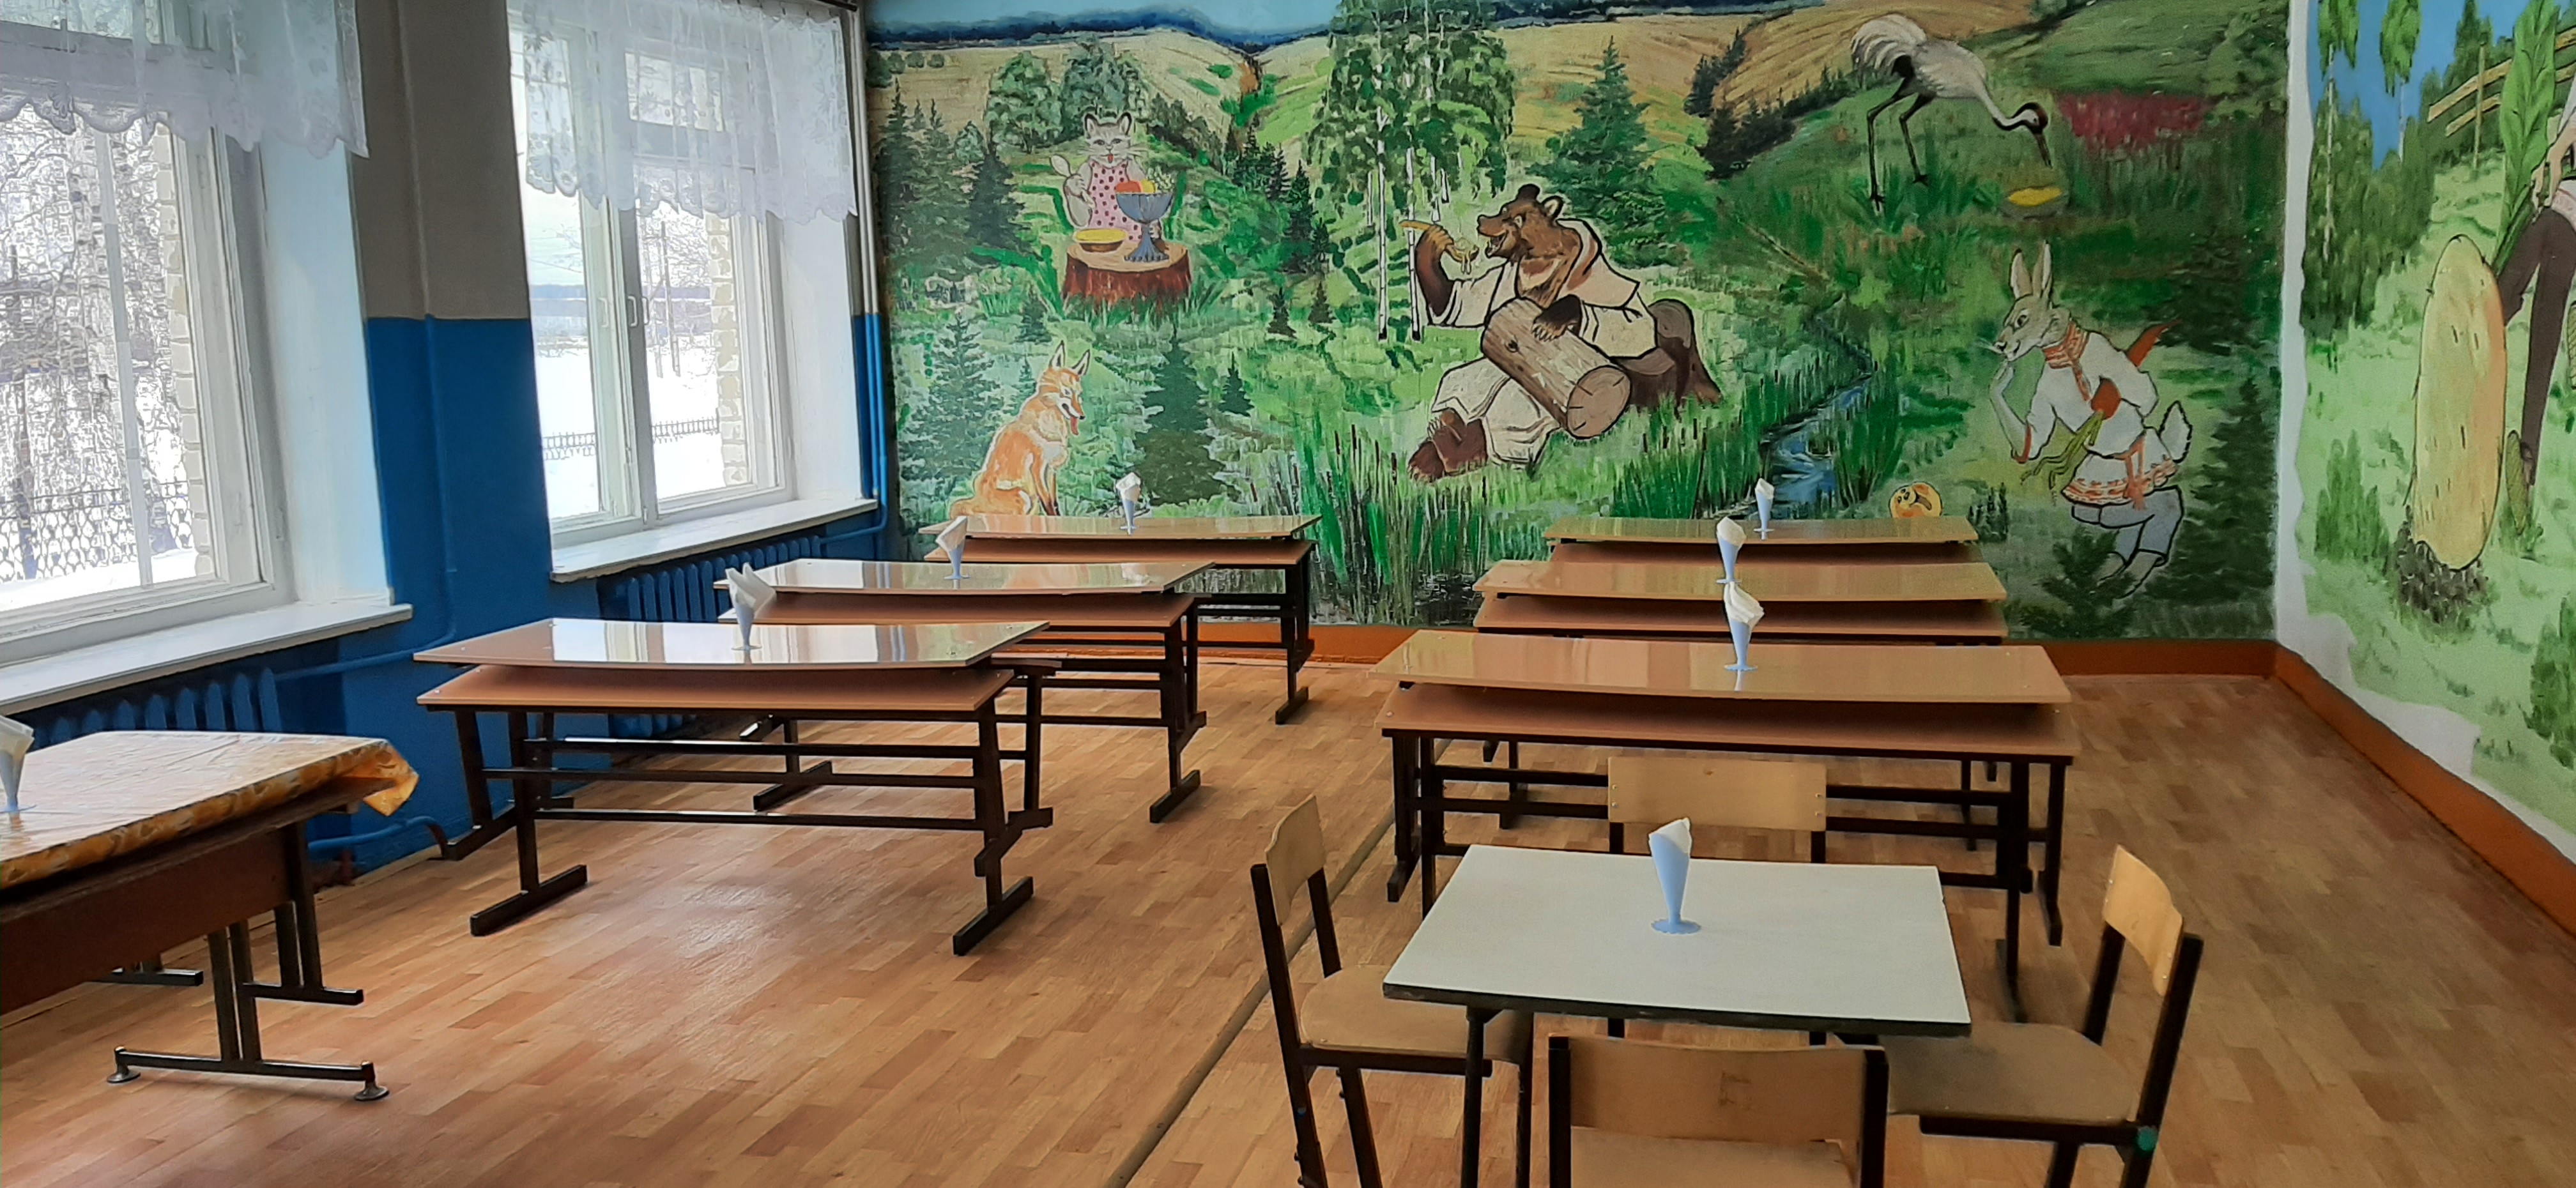 Столовая - особое место в школе, где учащиеся проводят перемены, отдыхают и общаются